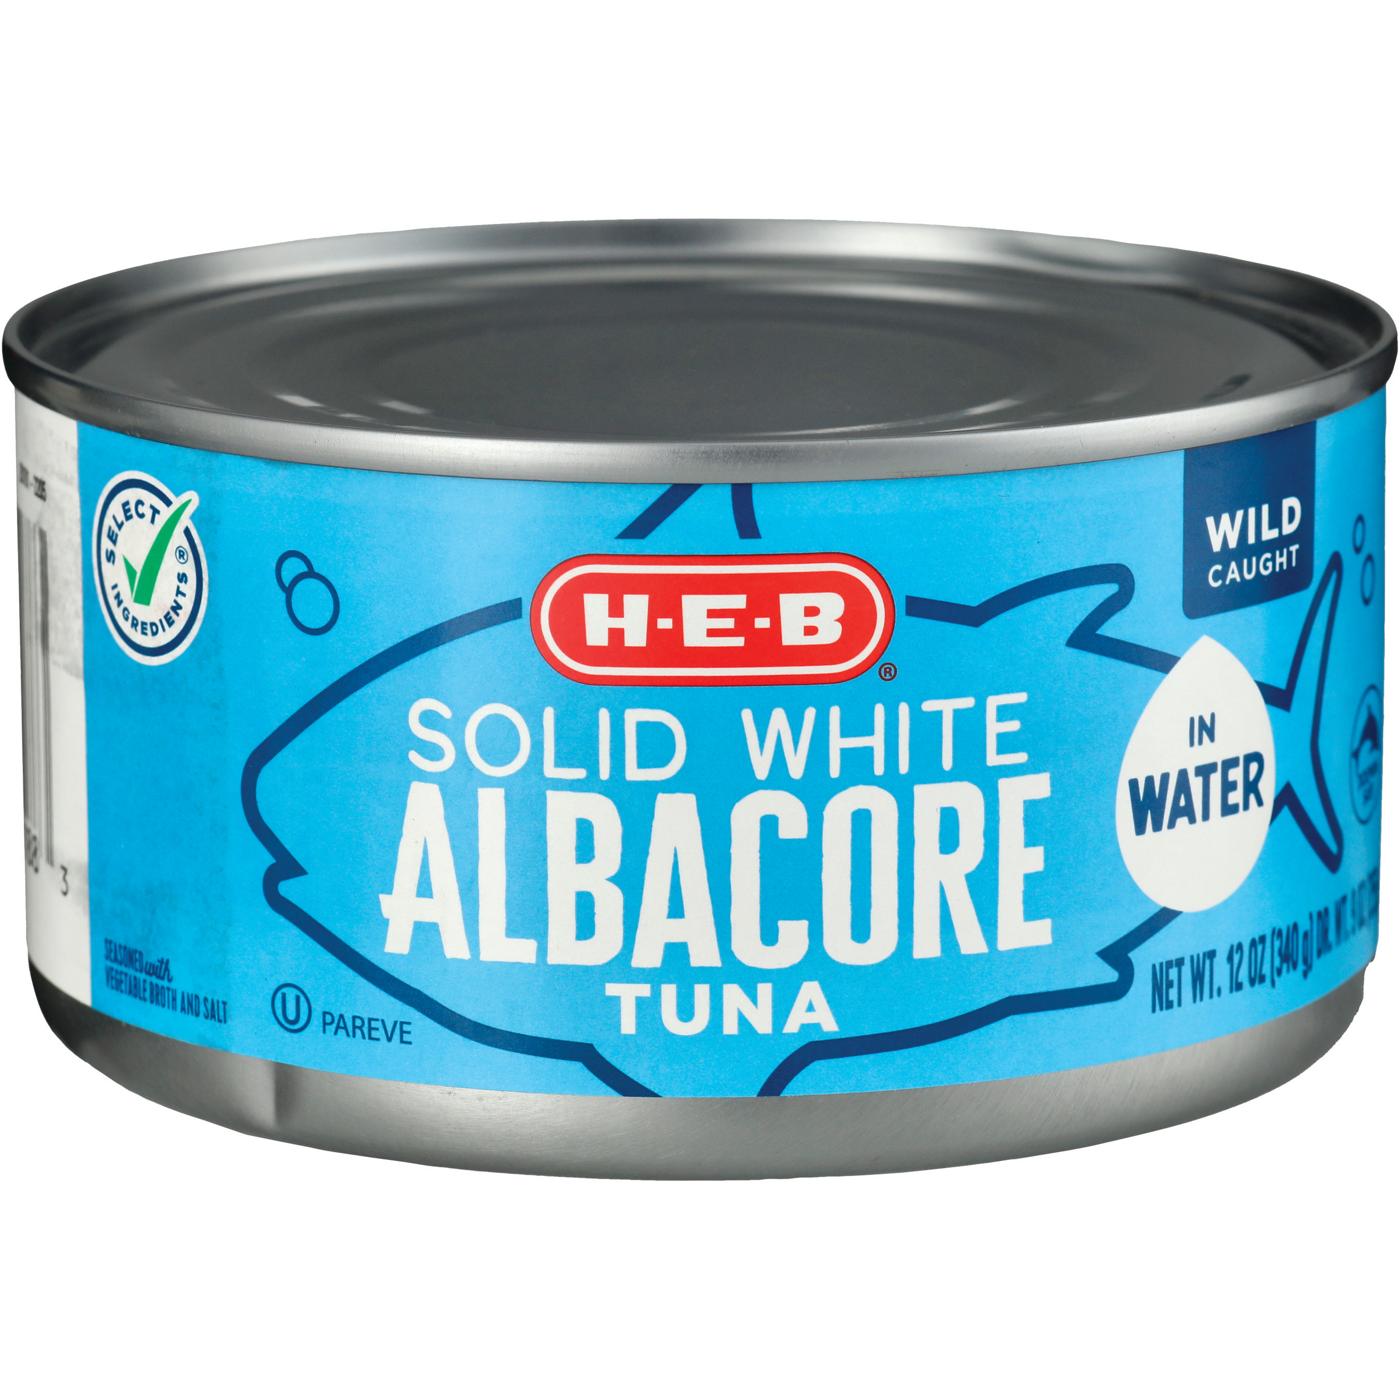 H-E-B Solid White Albacore Tuna in Water; image 1 of 2